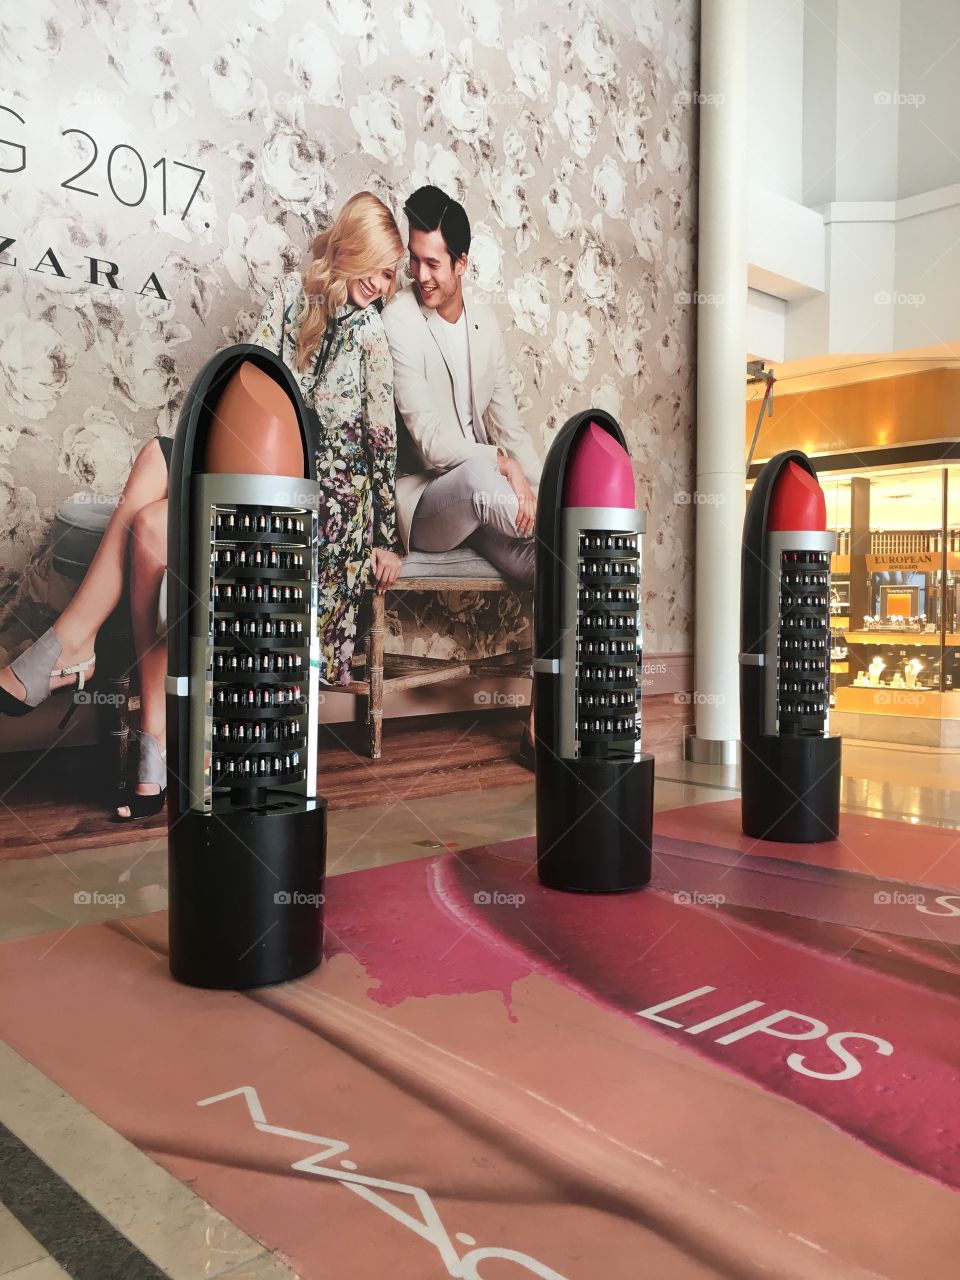 MAC lipstick display